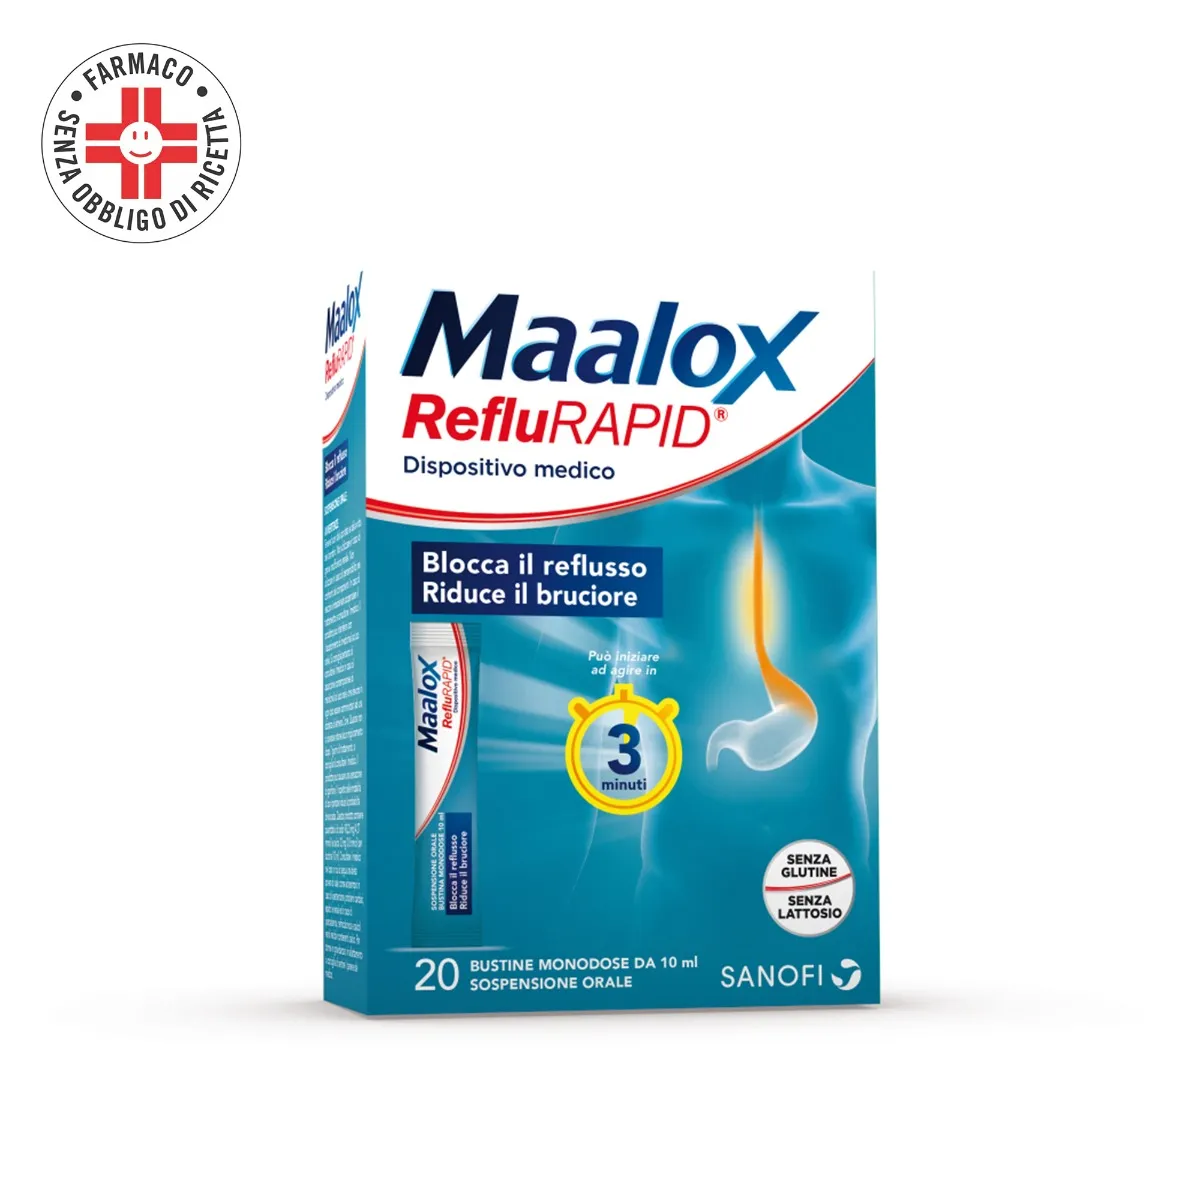 Maalox Reflurapid 20 Bustine - Reflusso e Acidità